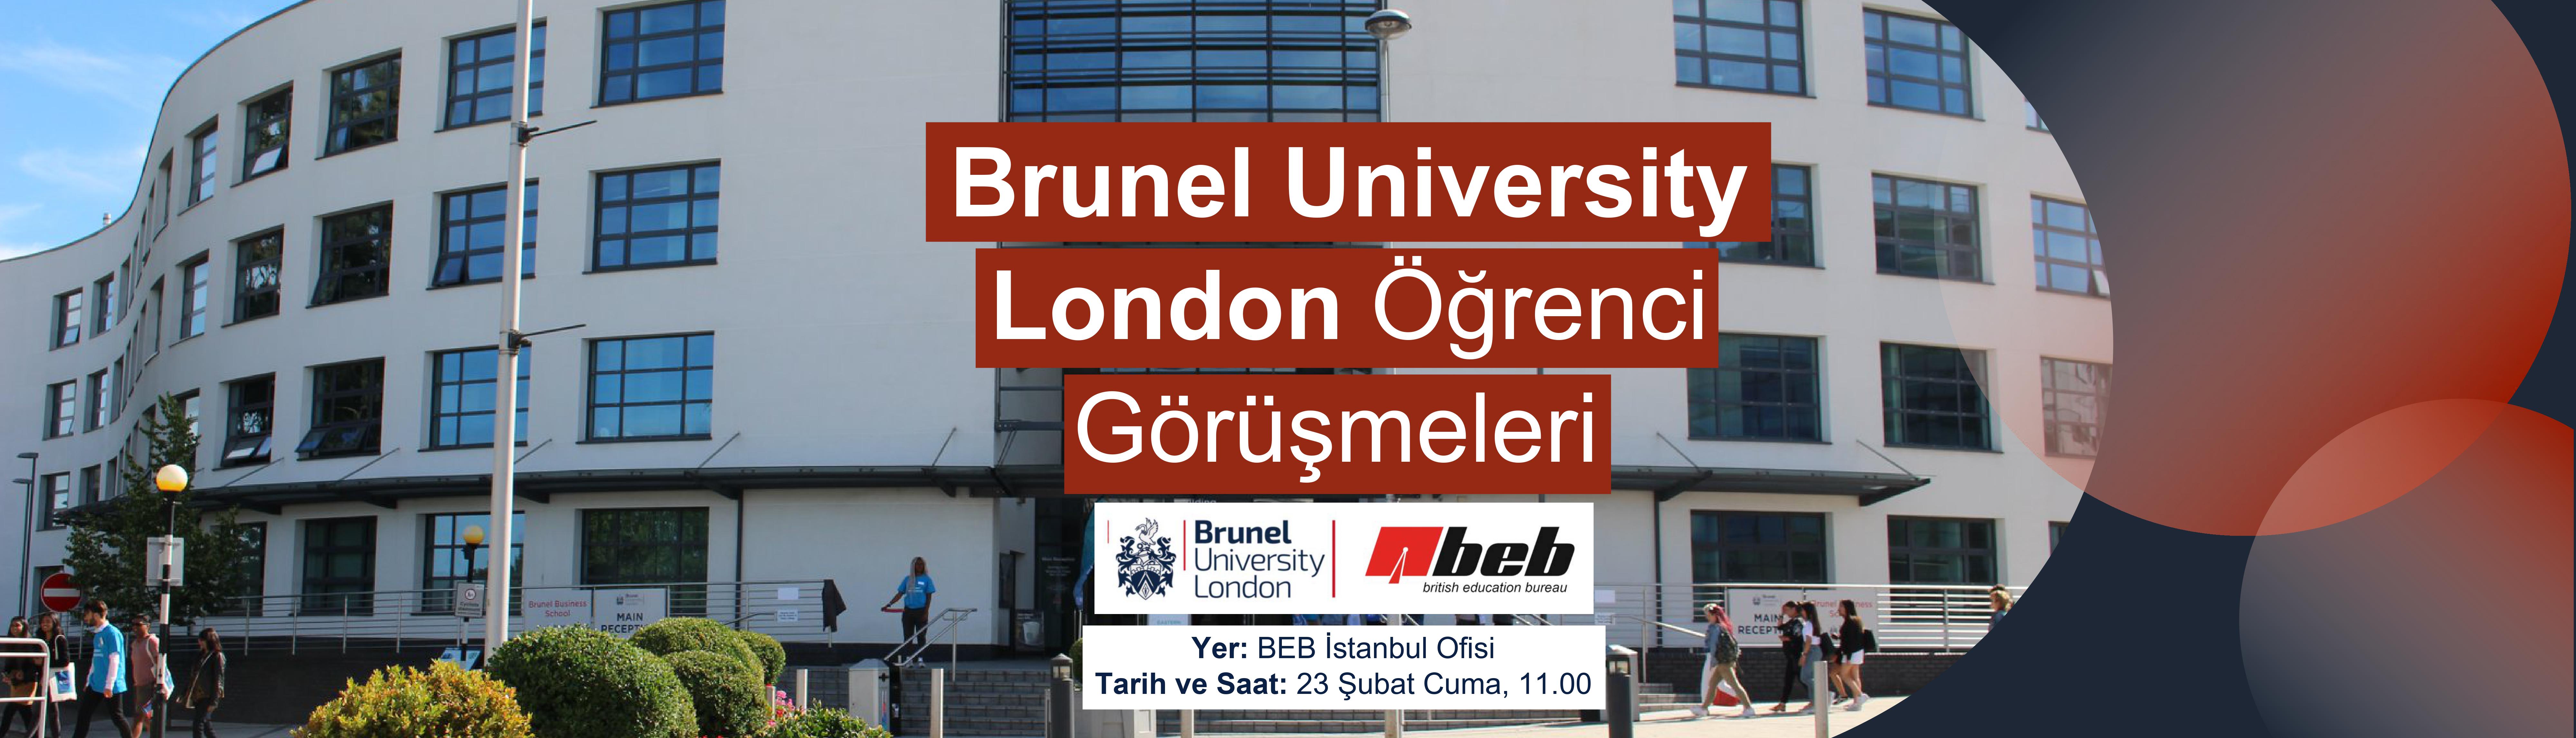 Brunel-University-London-BEB-Istanbul-Ofiste-Ogrenci-Gorusmeleri